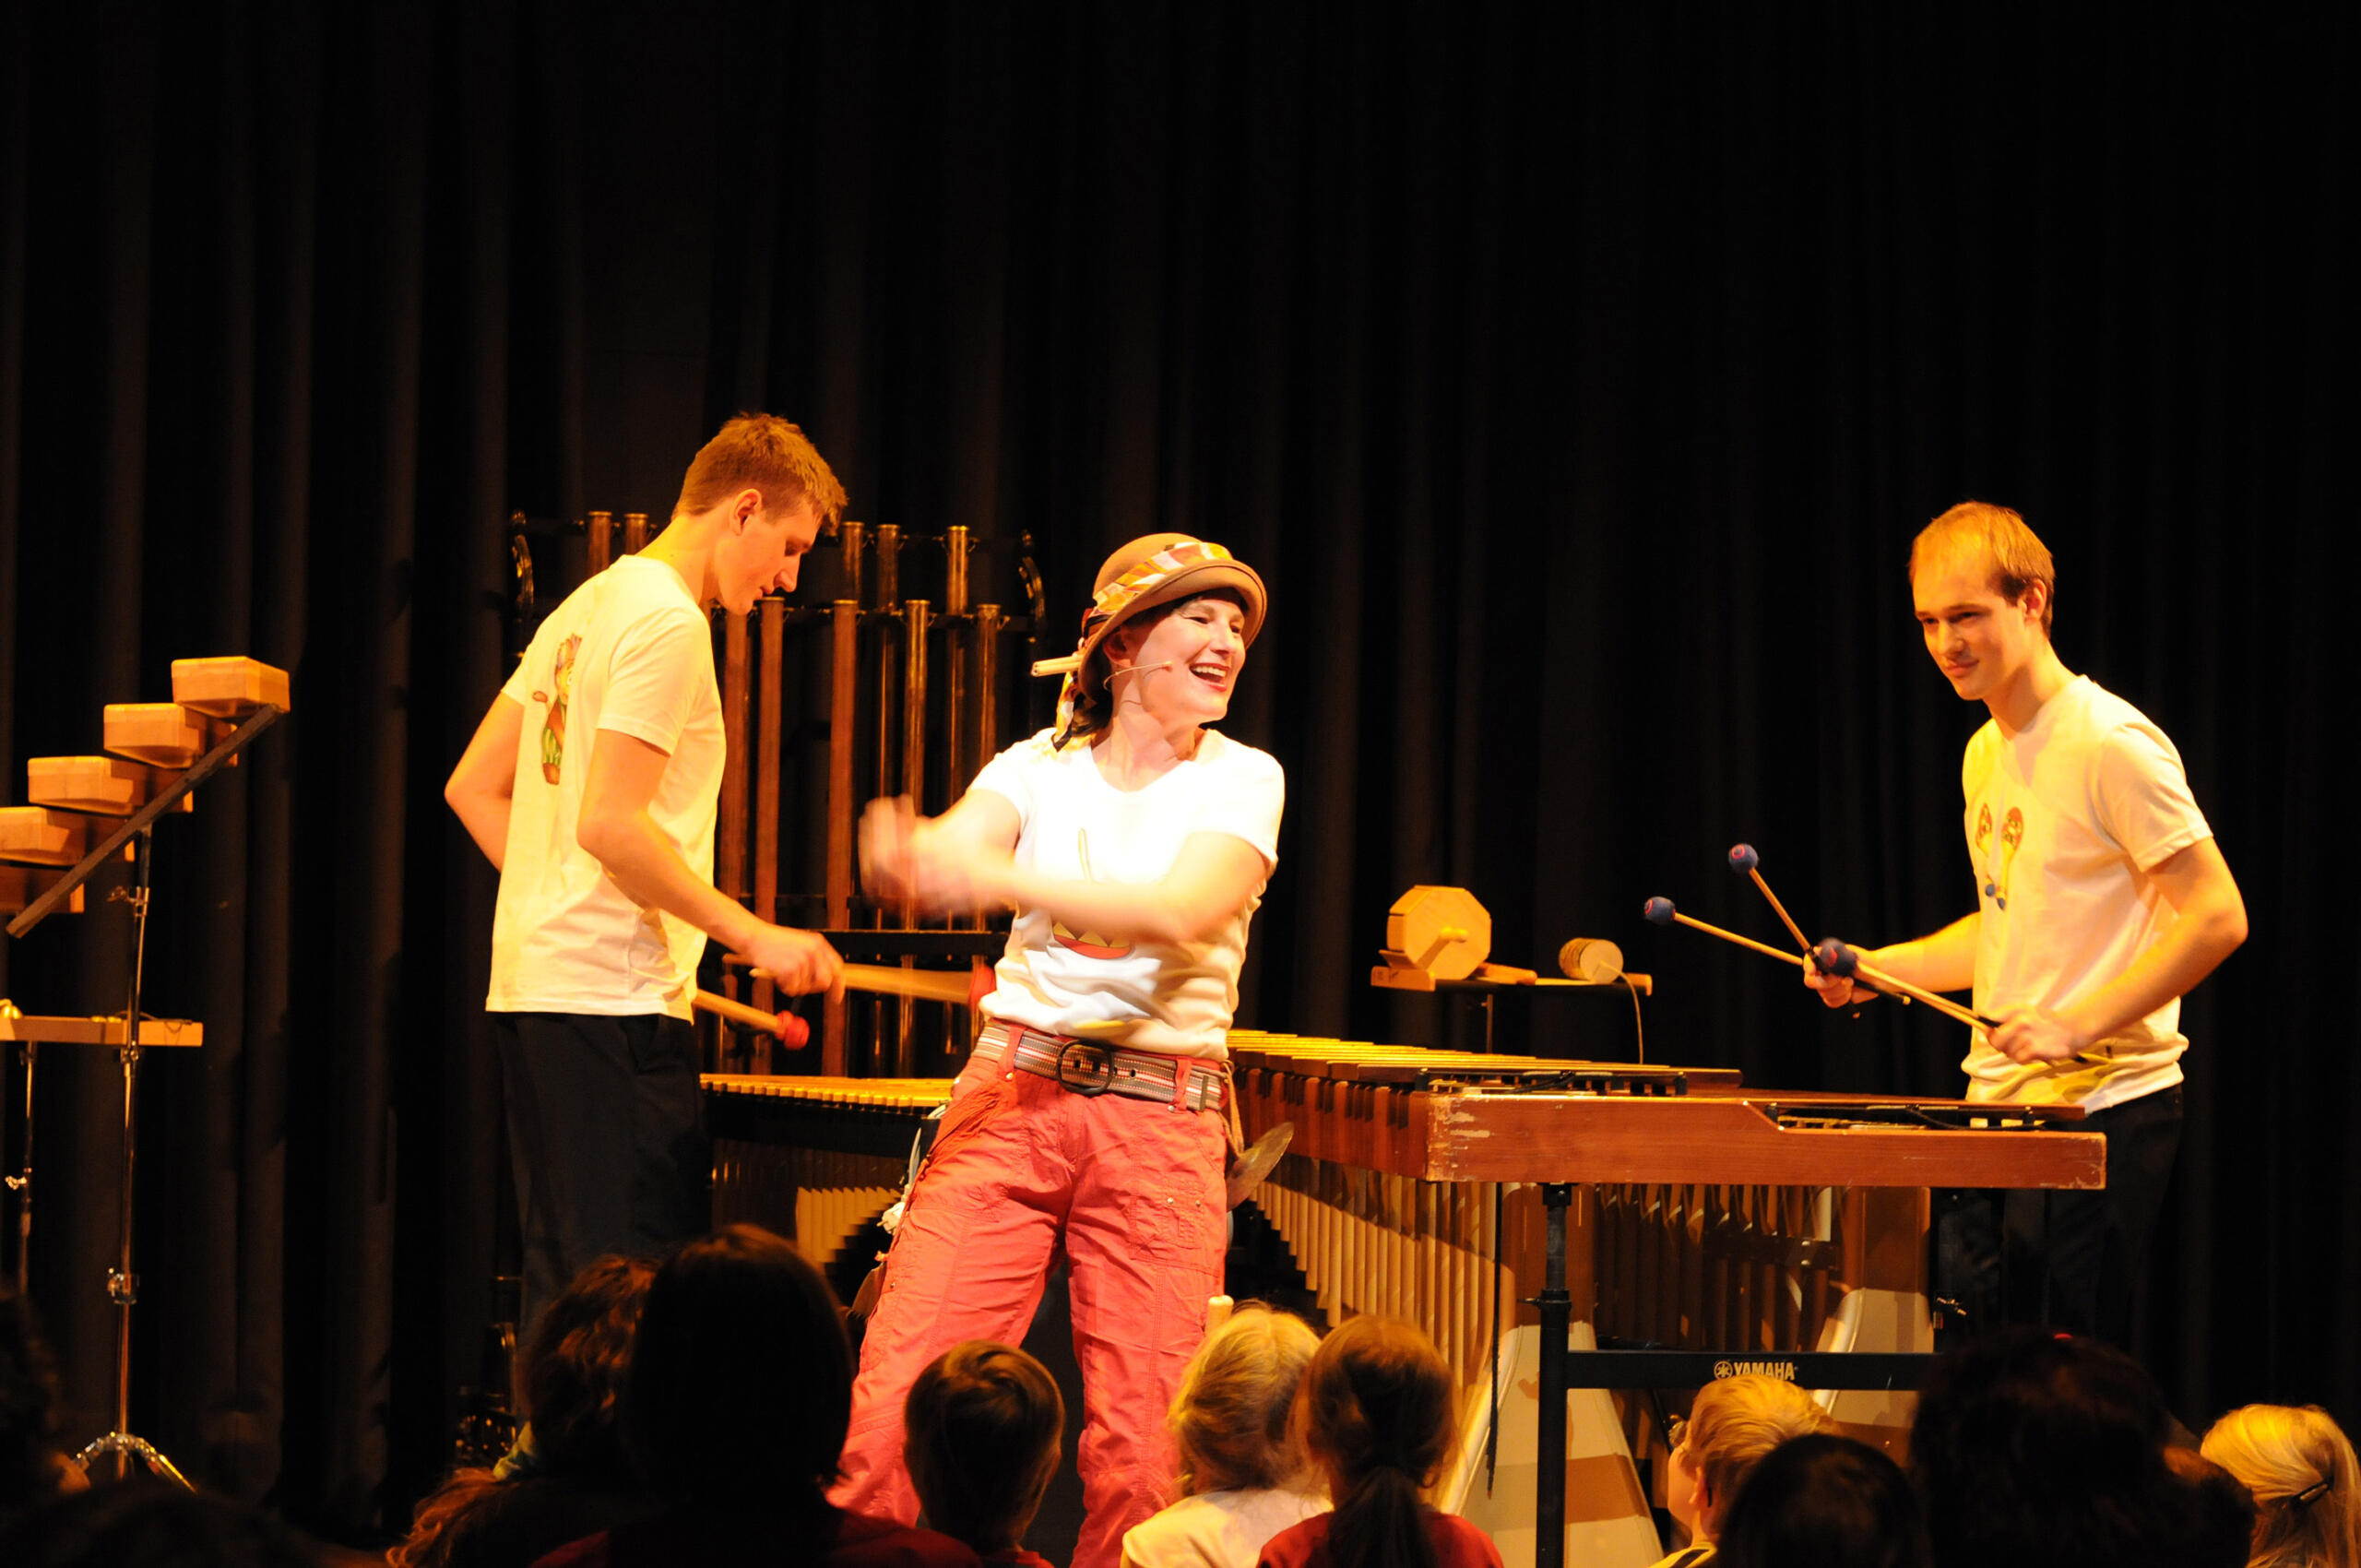 Eine Frau steht auf einer Bühne und tanzt und lacht. Im Hintergrund sieht man zwei Schlagwerker an ihren Instrumenten.